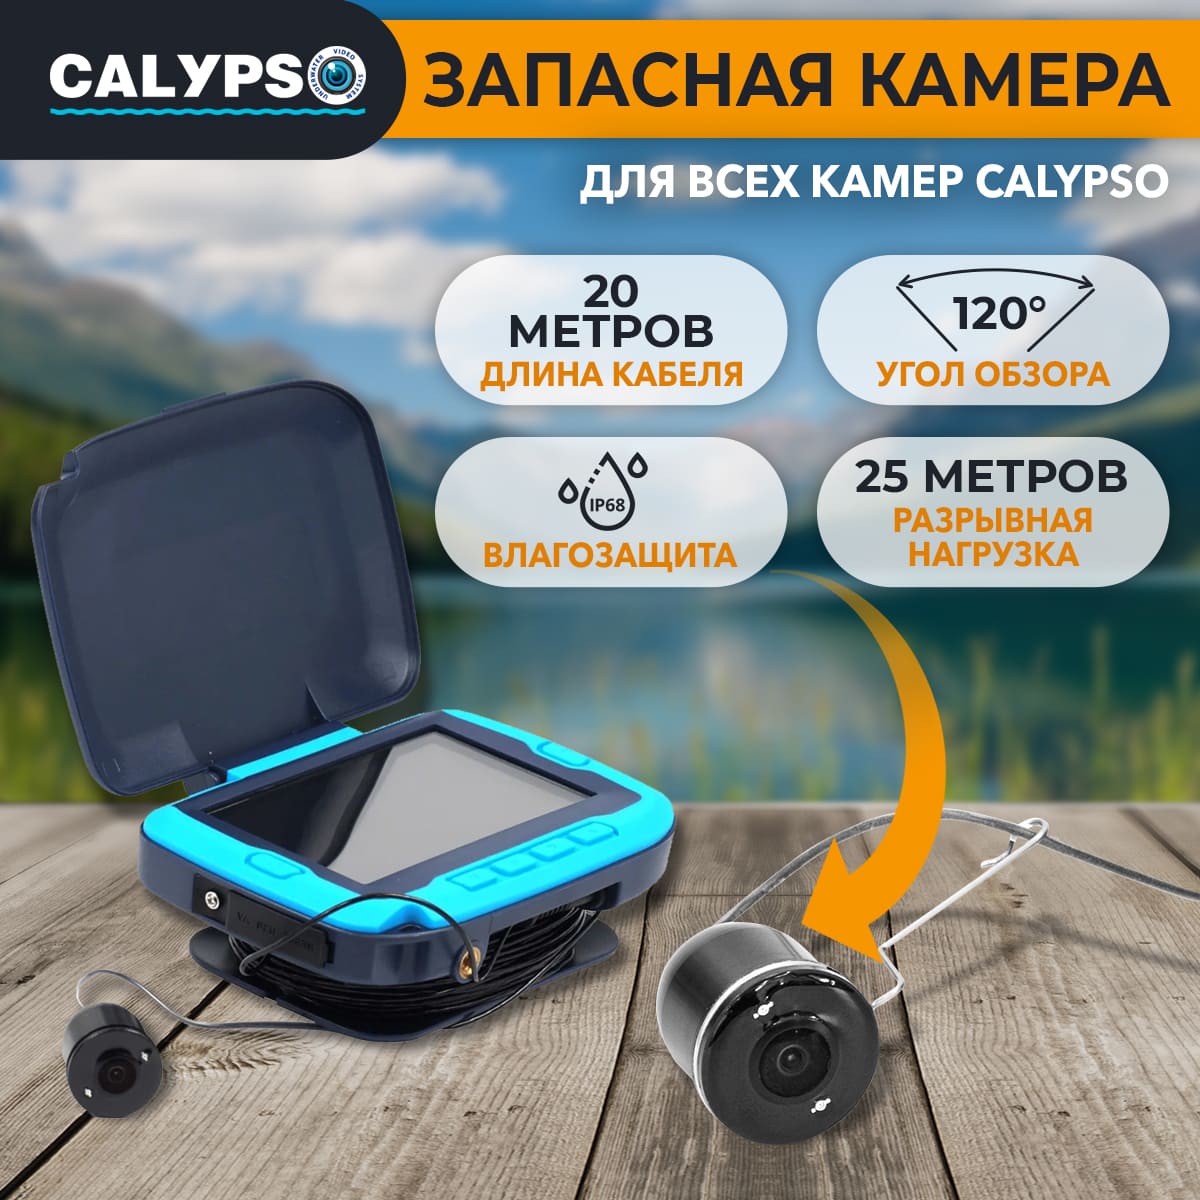 Камера запасная для CALYPSO UVS-002, UVS-003 Plus